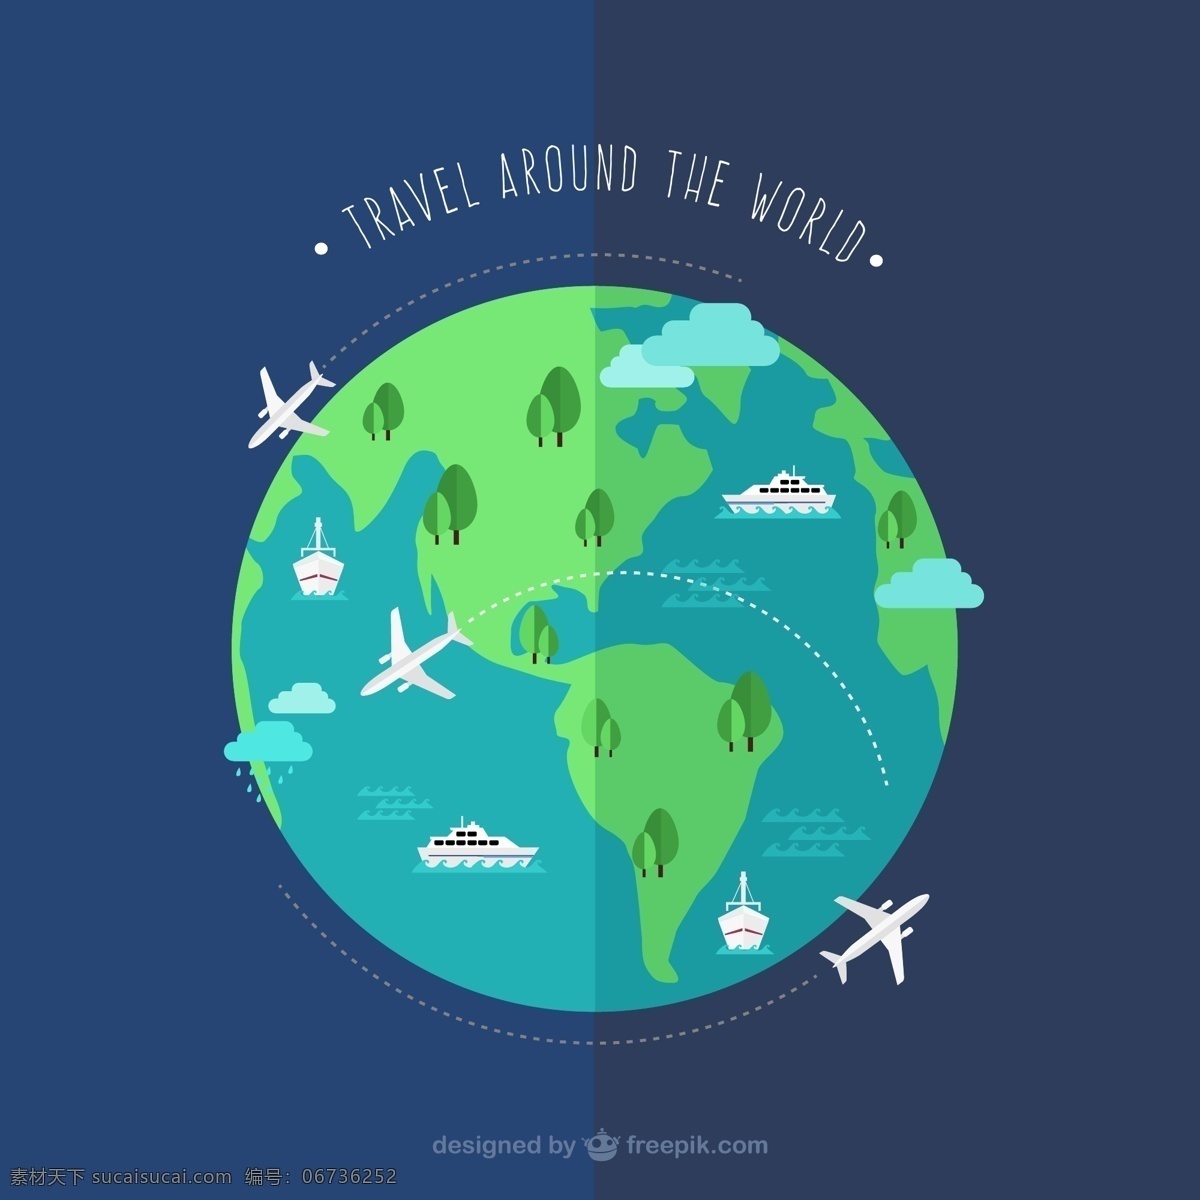 创意 环球 旅行 地球 插画 矢量图 英文 青色 天蓝色